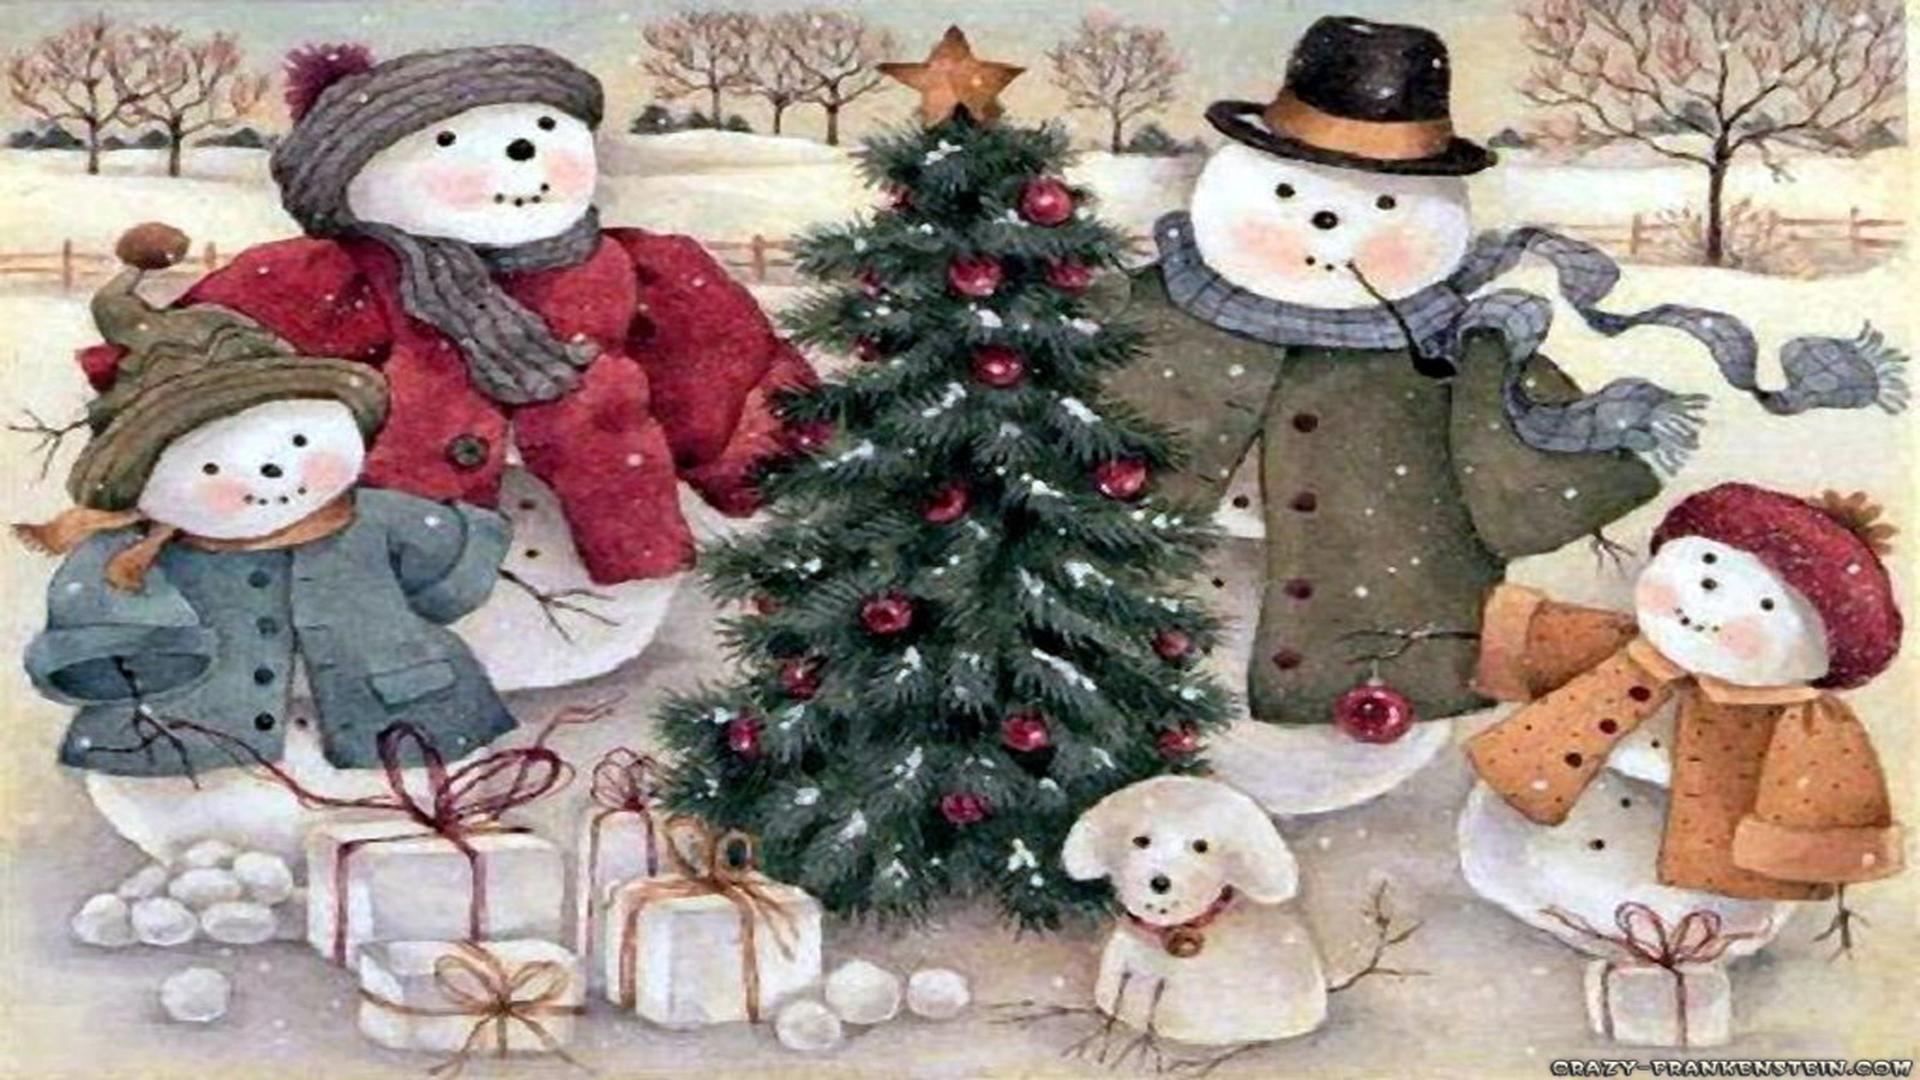 Snowman family Christmas scene free desktop background